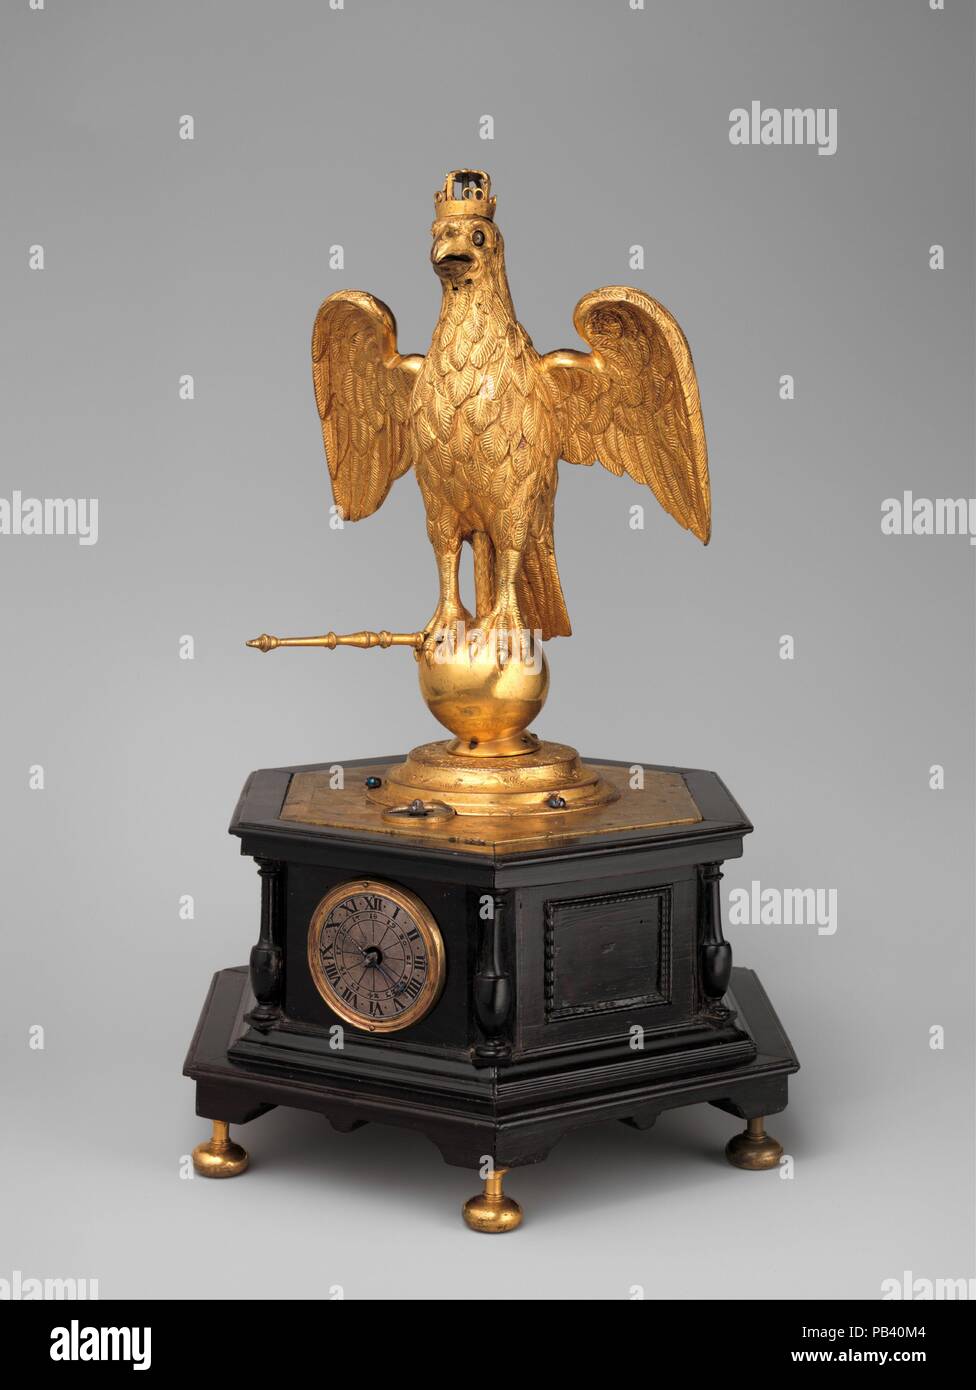 Reloj de autómatas en la forma de un águila. Cultura: alemán, Augsburgo.  Dimensiones: total: 13 1/4 x 9 1/8 x 7 5/8 in. (33,7 × 23,2 × 19,4 cm).  Fecha: ca. 1630.